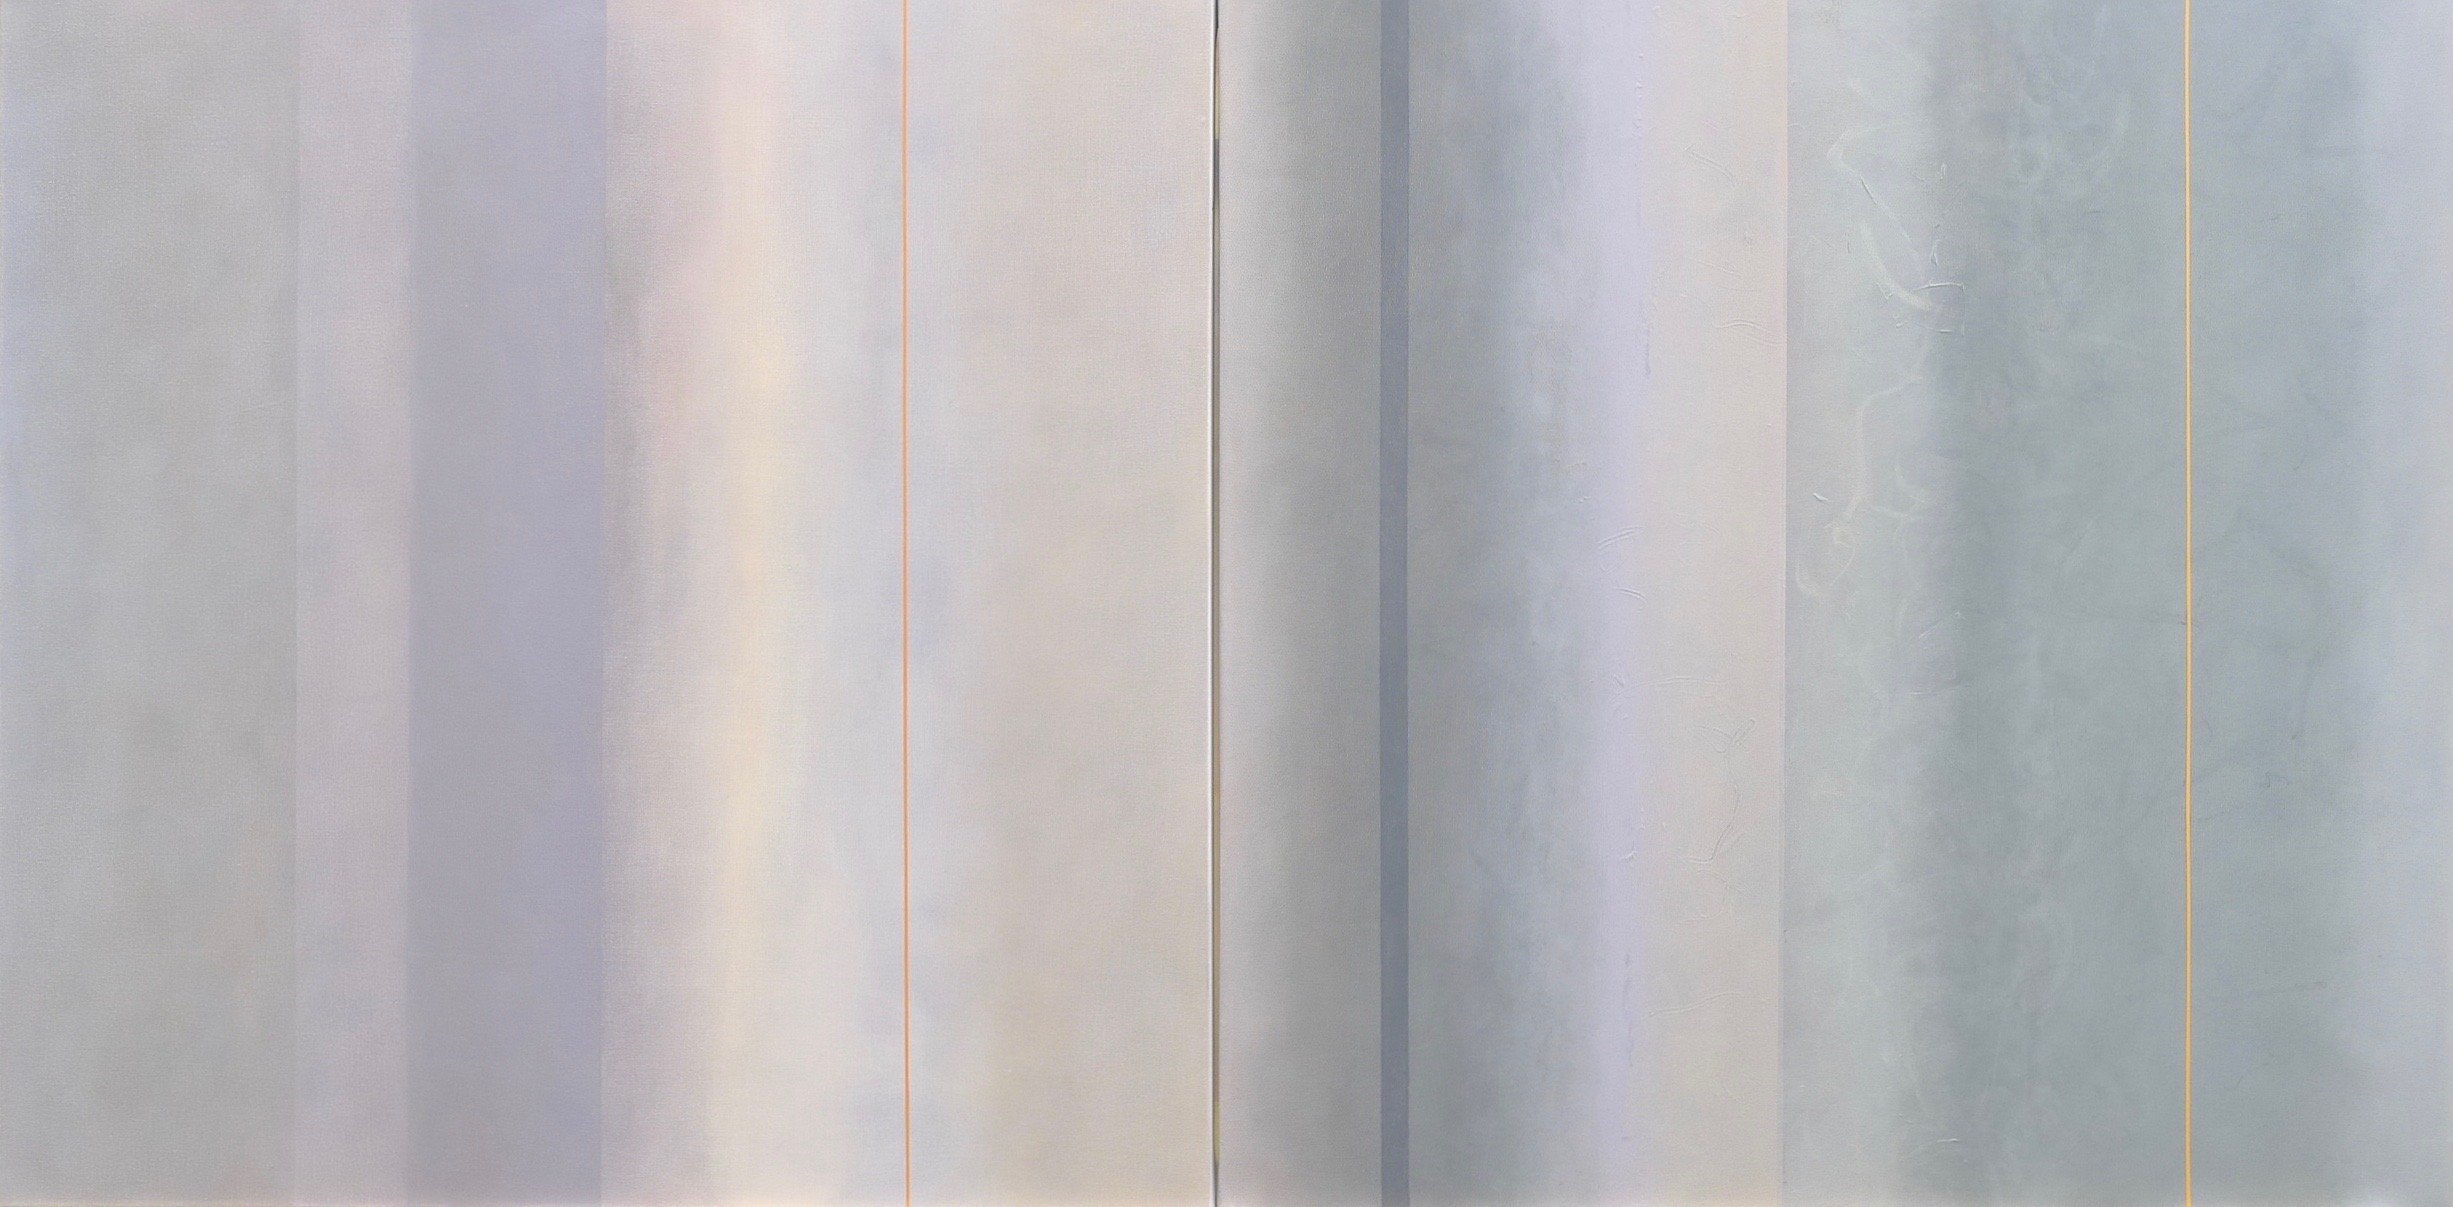 Roisin Bateman, Sun Compass Diptych, Oil on canvas 38 x 76 inches $7200 Sun Compass 1 and 2, 38 x 38 inches, each $4400 each